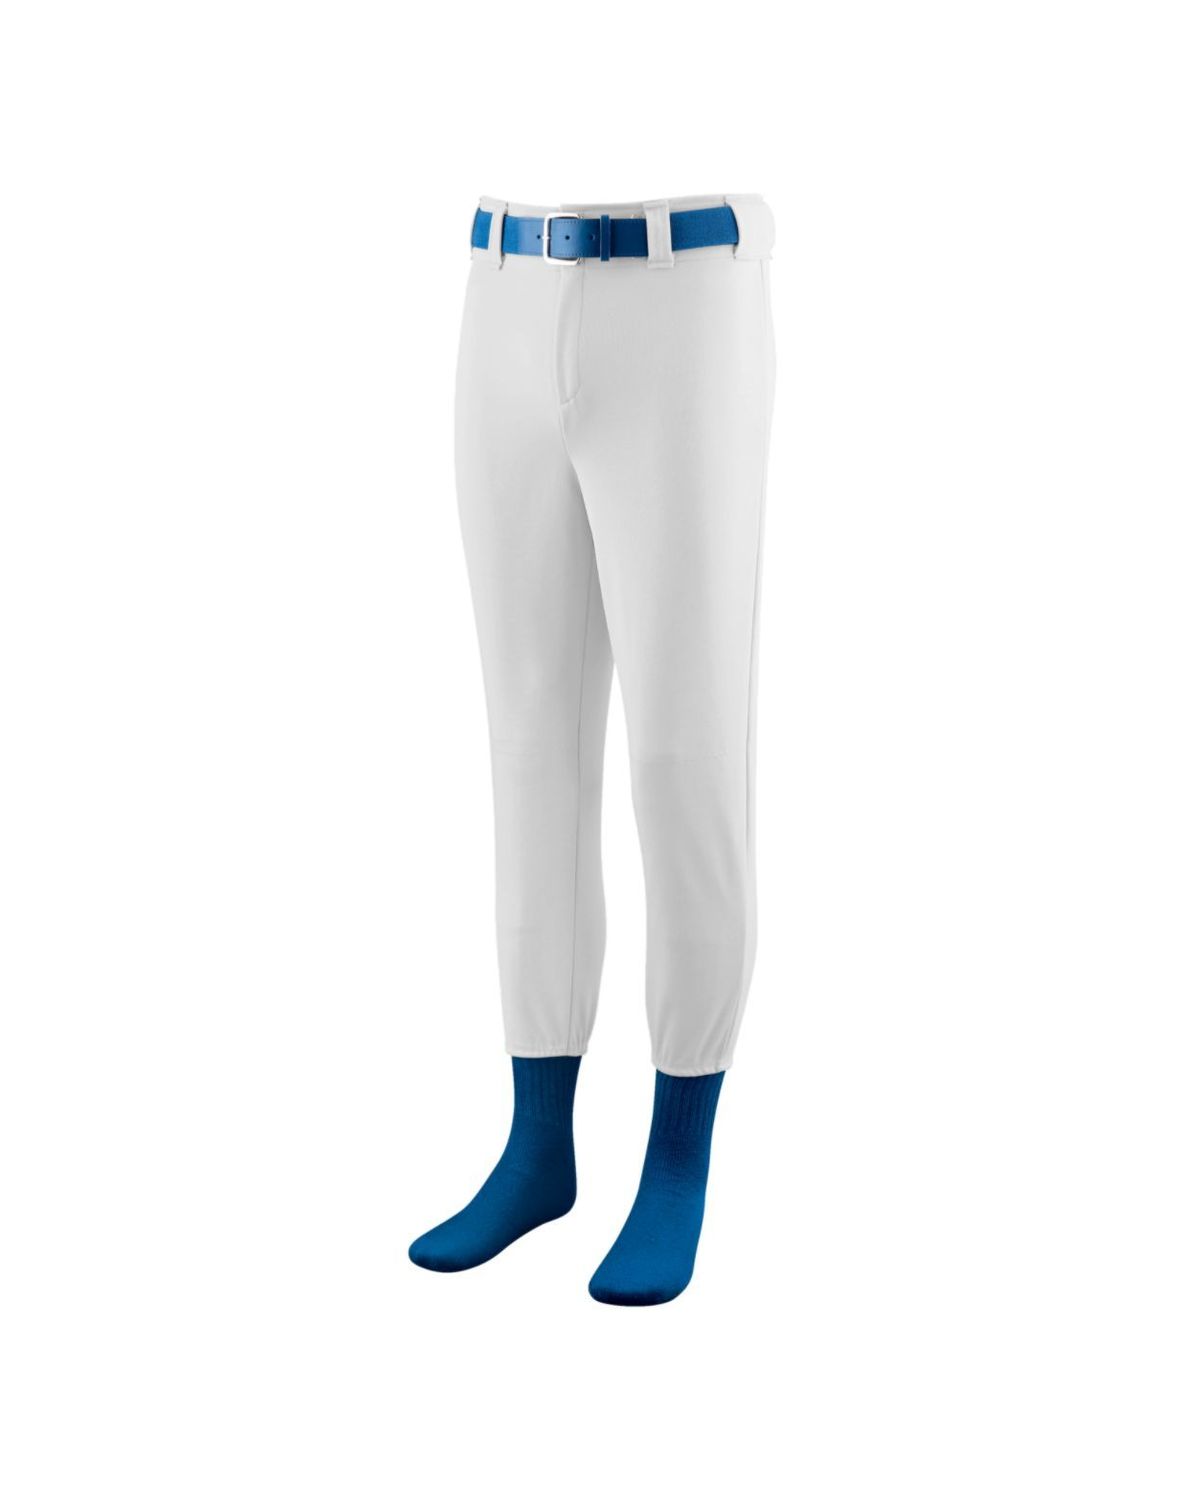 'Augusta Sportswear 811 Youth Softball/Baseball Pant'